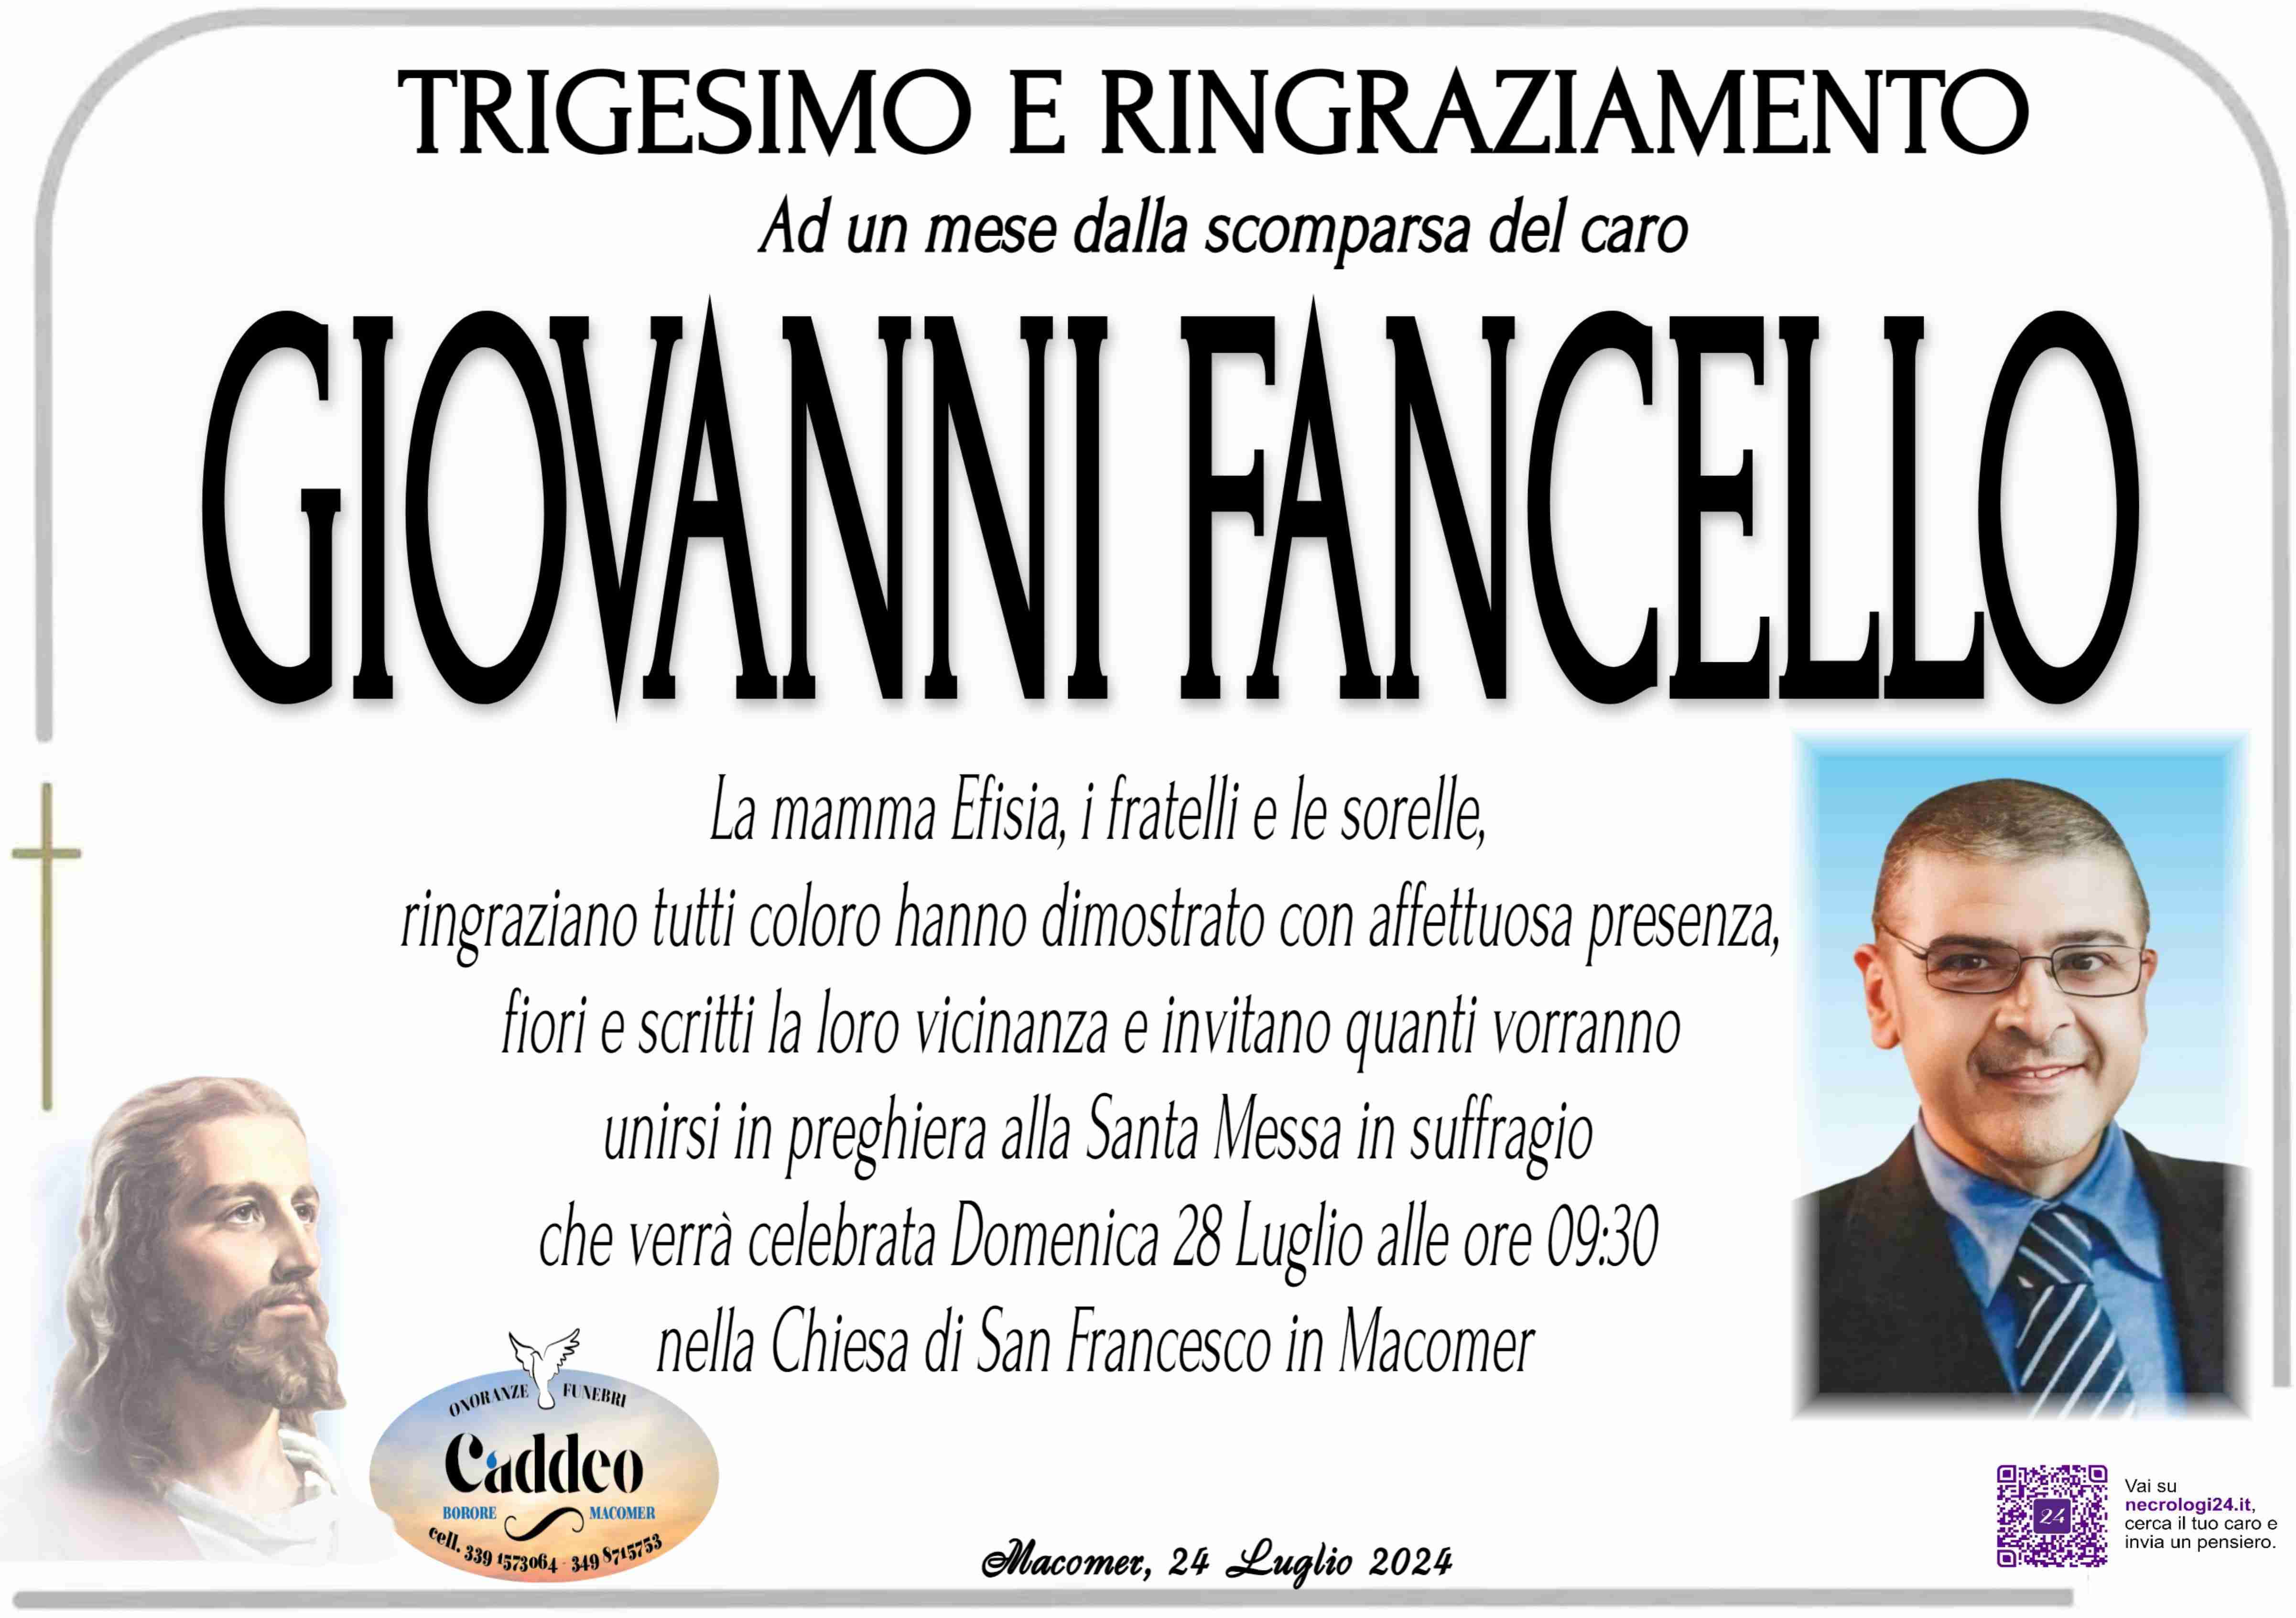 Giovanni Fancello